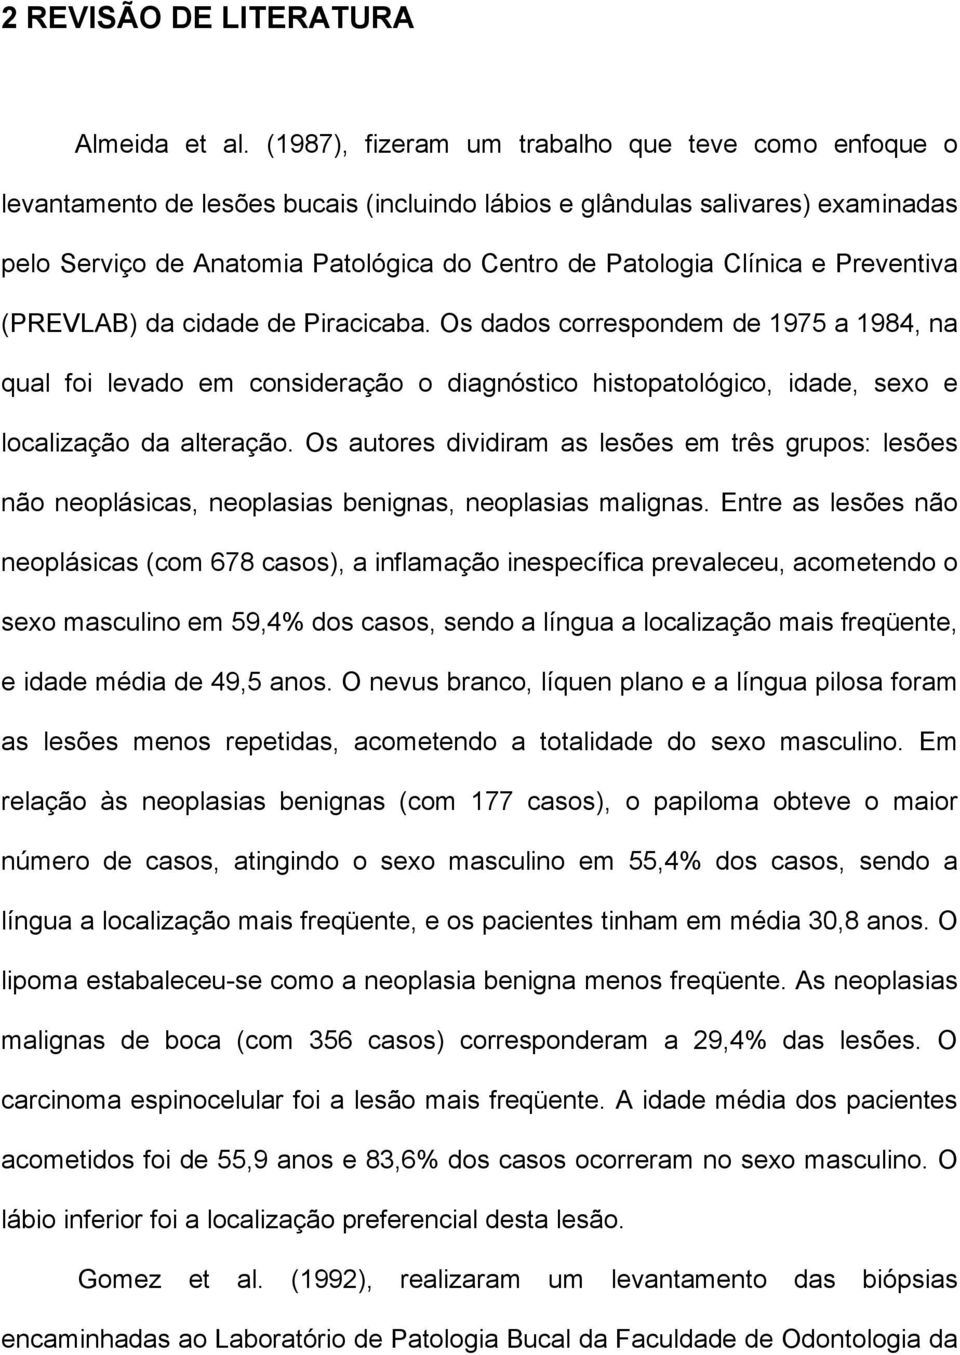 Clínica e Preventiva (PREVLAB) da cidade de Piracicaba. Os dados correspondem de 1975 a 1984, na qual foi levado em consideração o diagnóstico histopatológico, idade, sexo e localização da alteração.